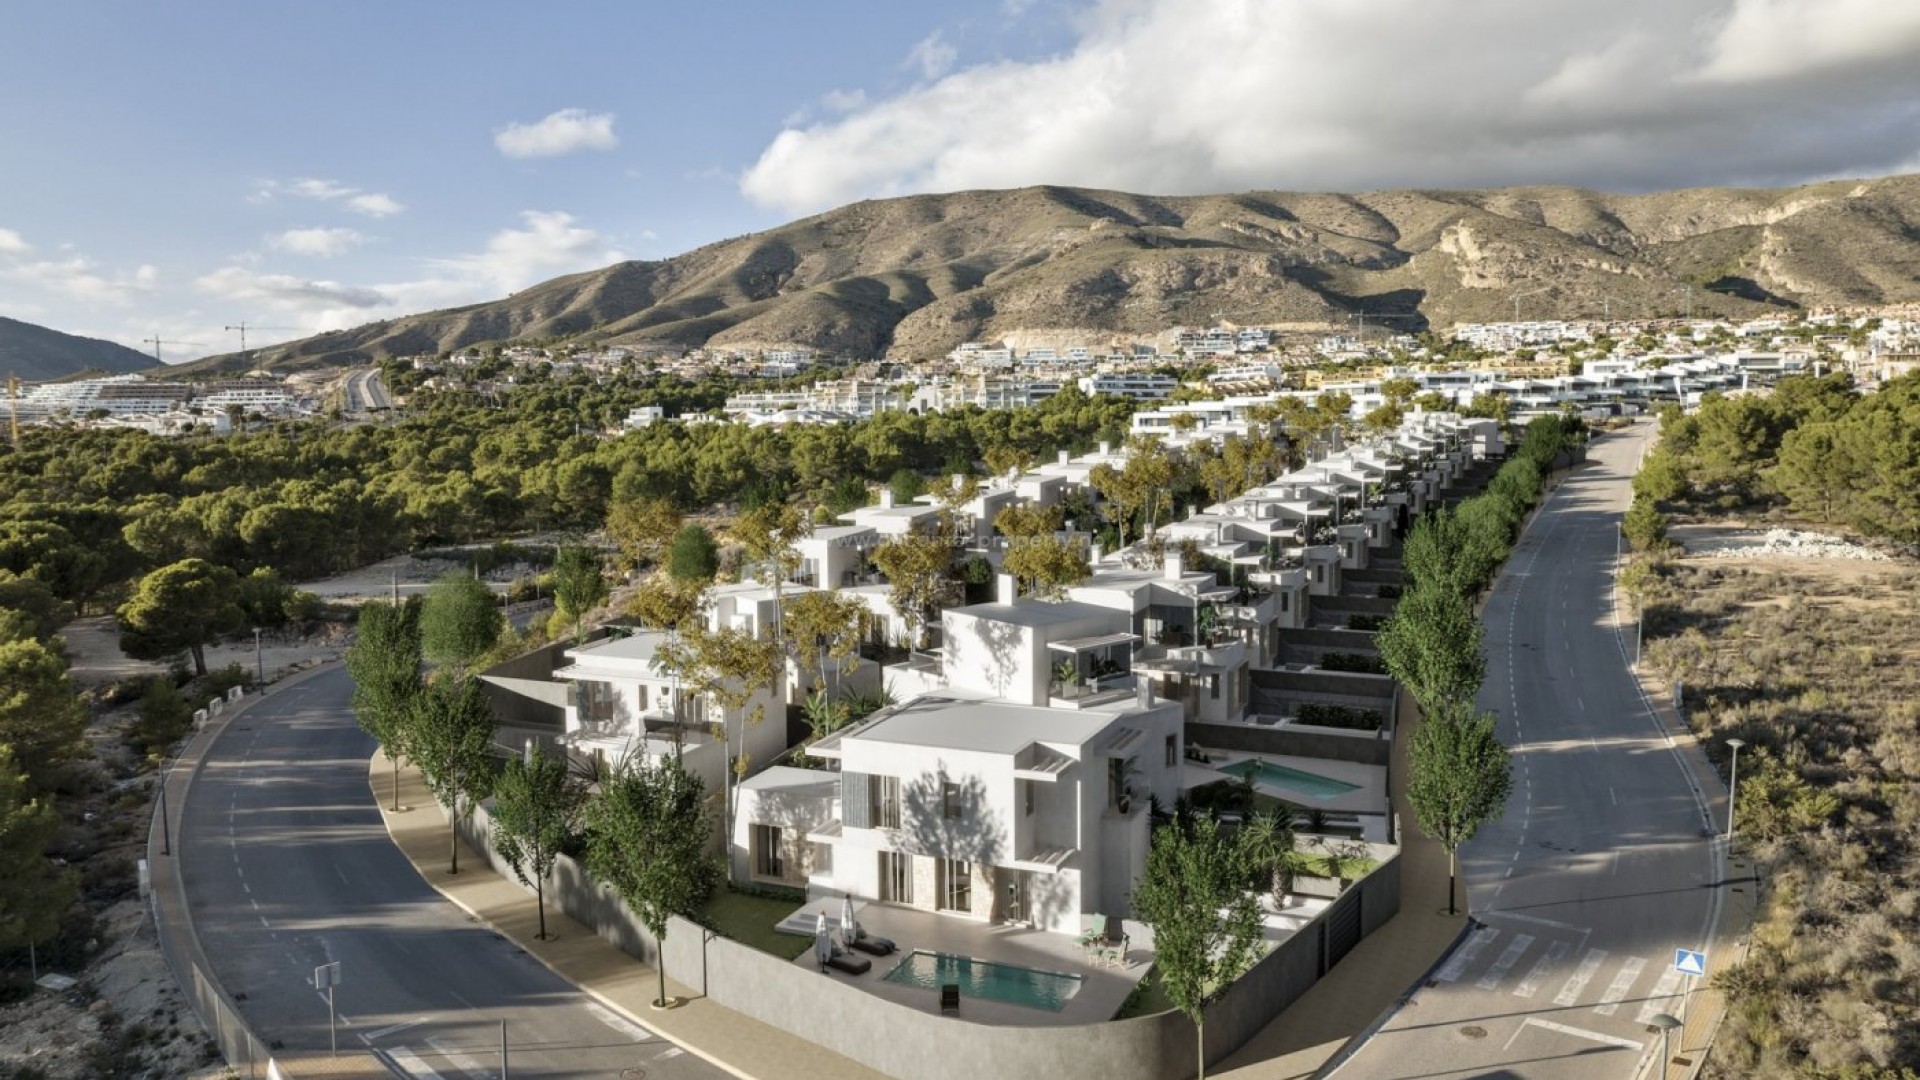 30 Hus/villaer i Sierra Cortina i Finestrat i Alicante nord ved Benidorm, 3 soverom, 3 bad, gjestetoalett, terrasser, privat hage med basseng og kjeller